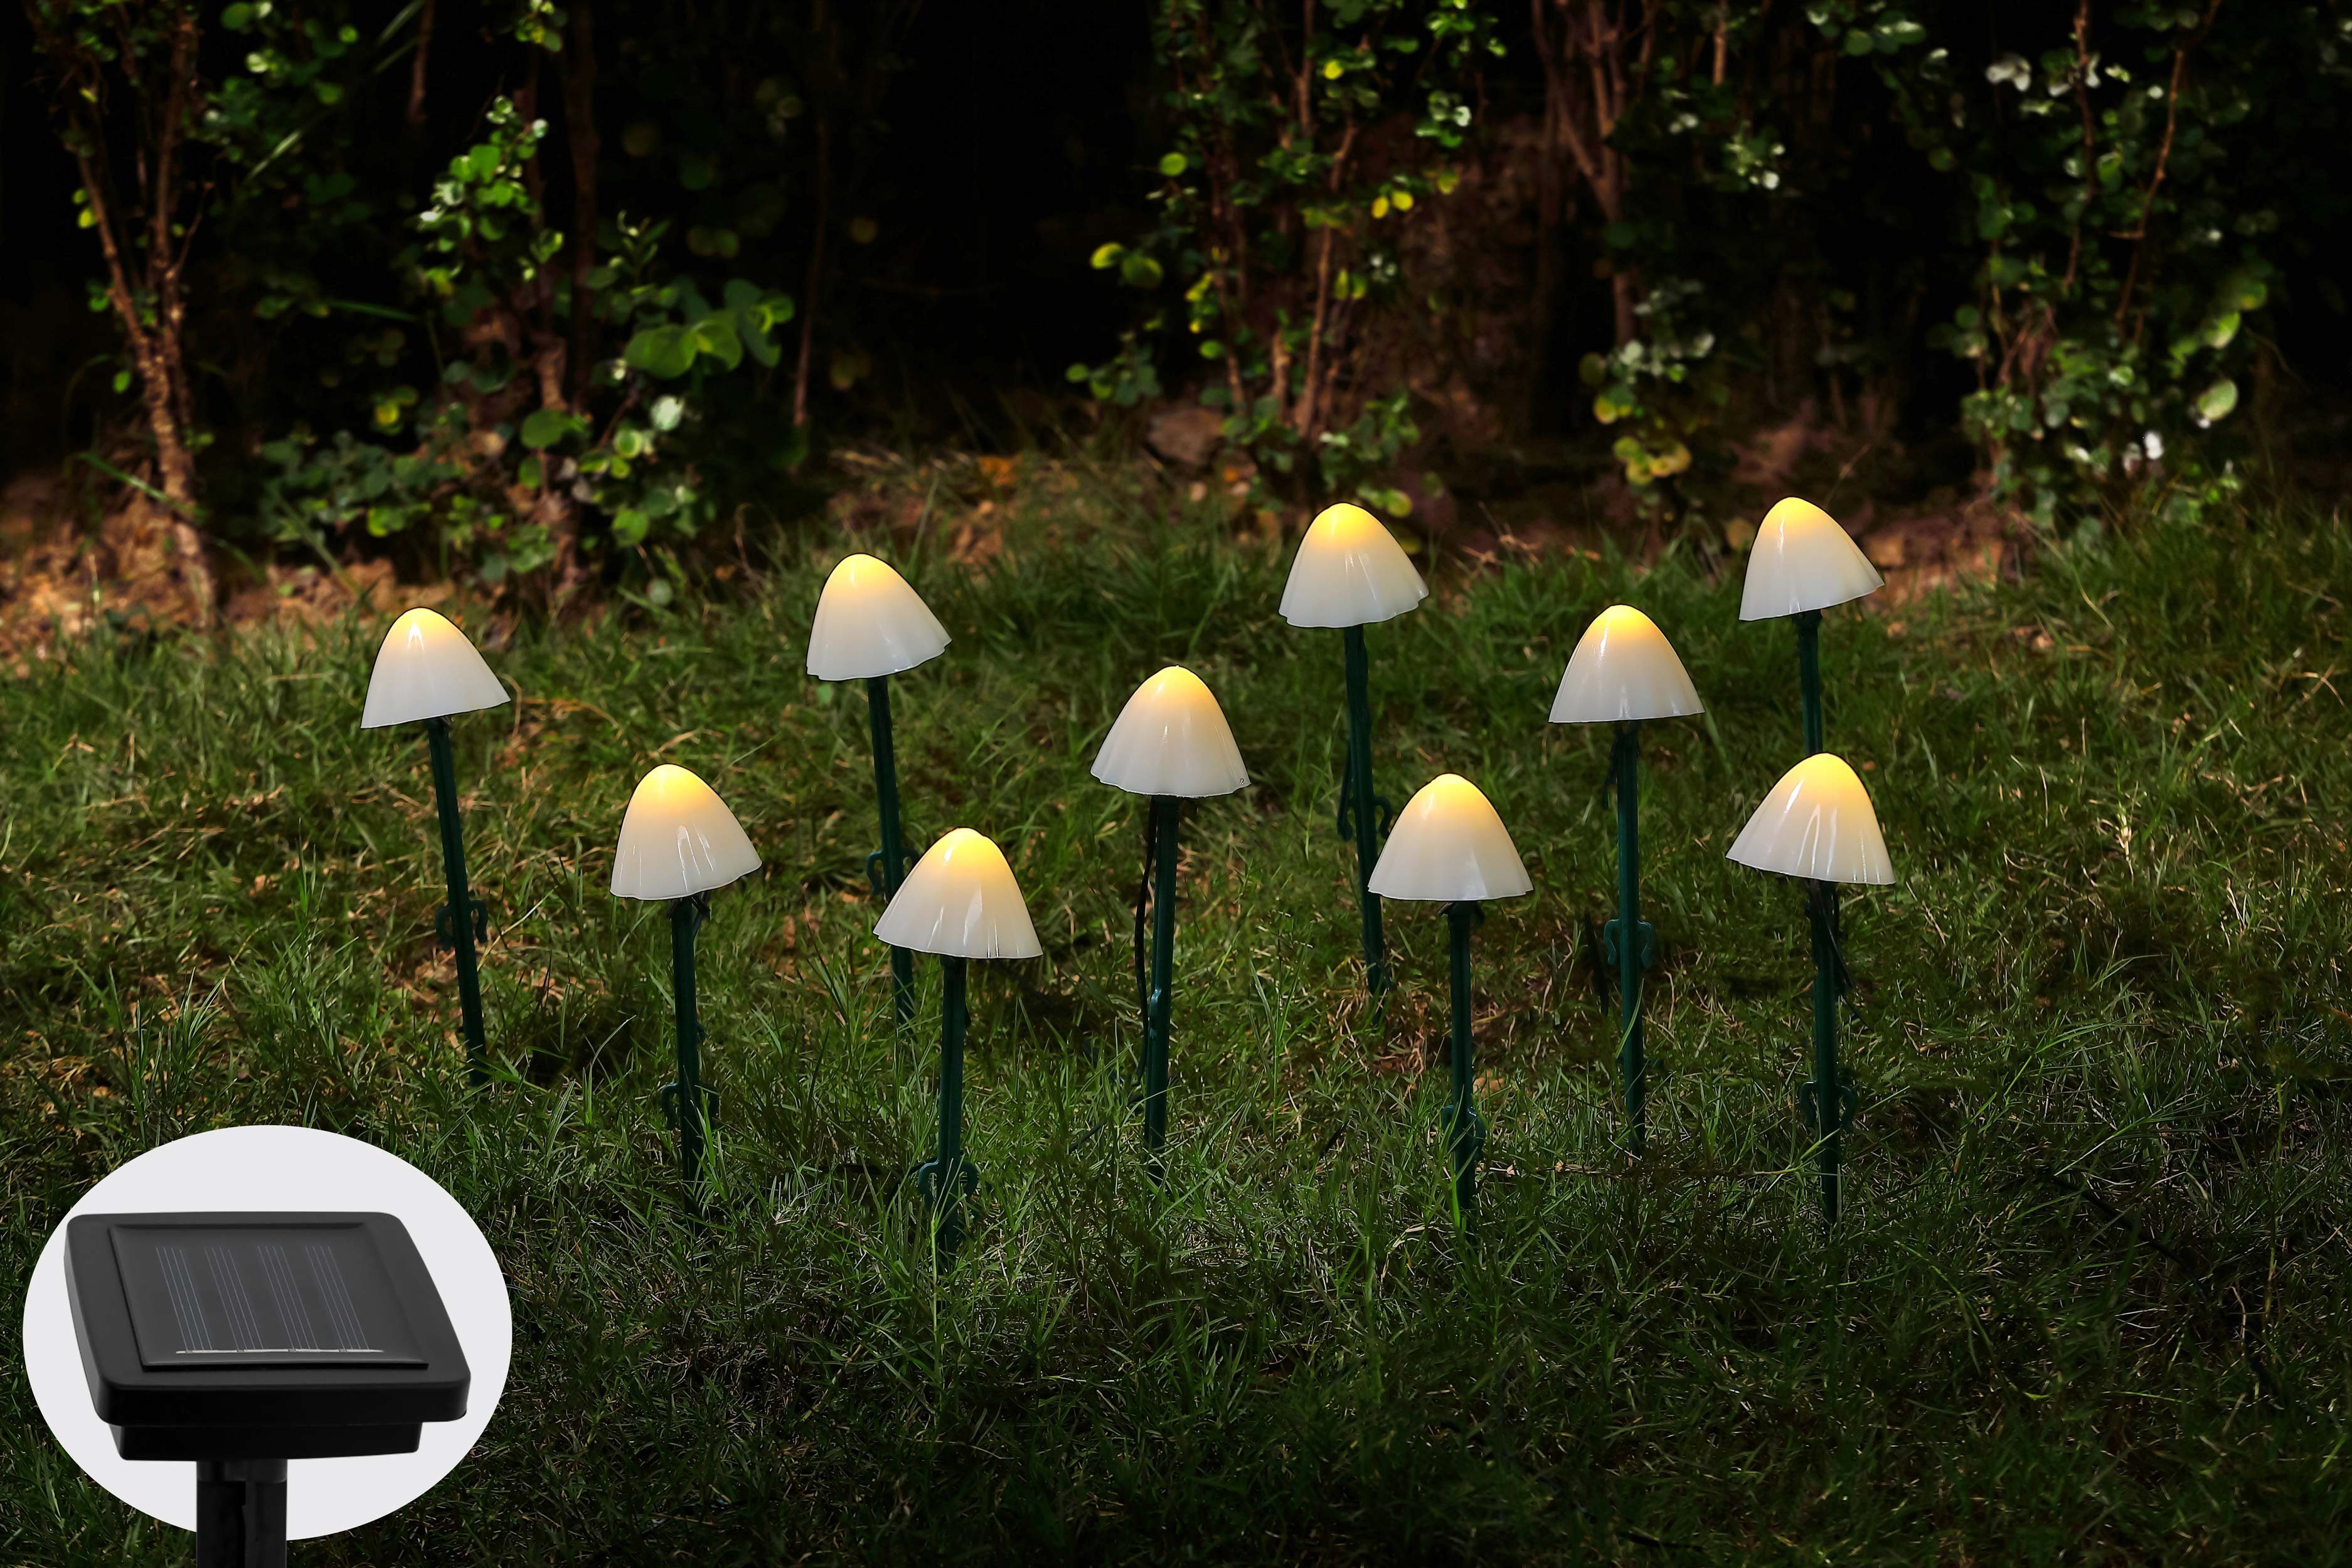 IC Gardenworld LED Solarleuchte 10 Solar Pilze als Boden-Lichterkette, warm-weiße Pilzleuchte, Warm-weiß, ca. 470 cm + 200 cm Zuleitung, dekorative Solarleuchten für Garten, Balkon, Terrasse